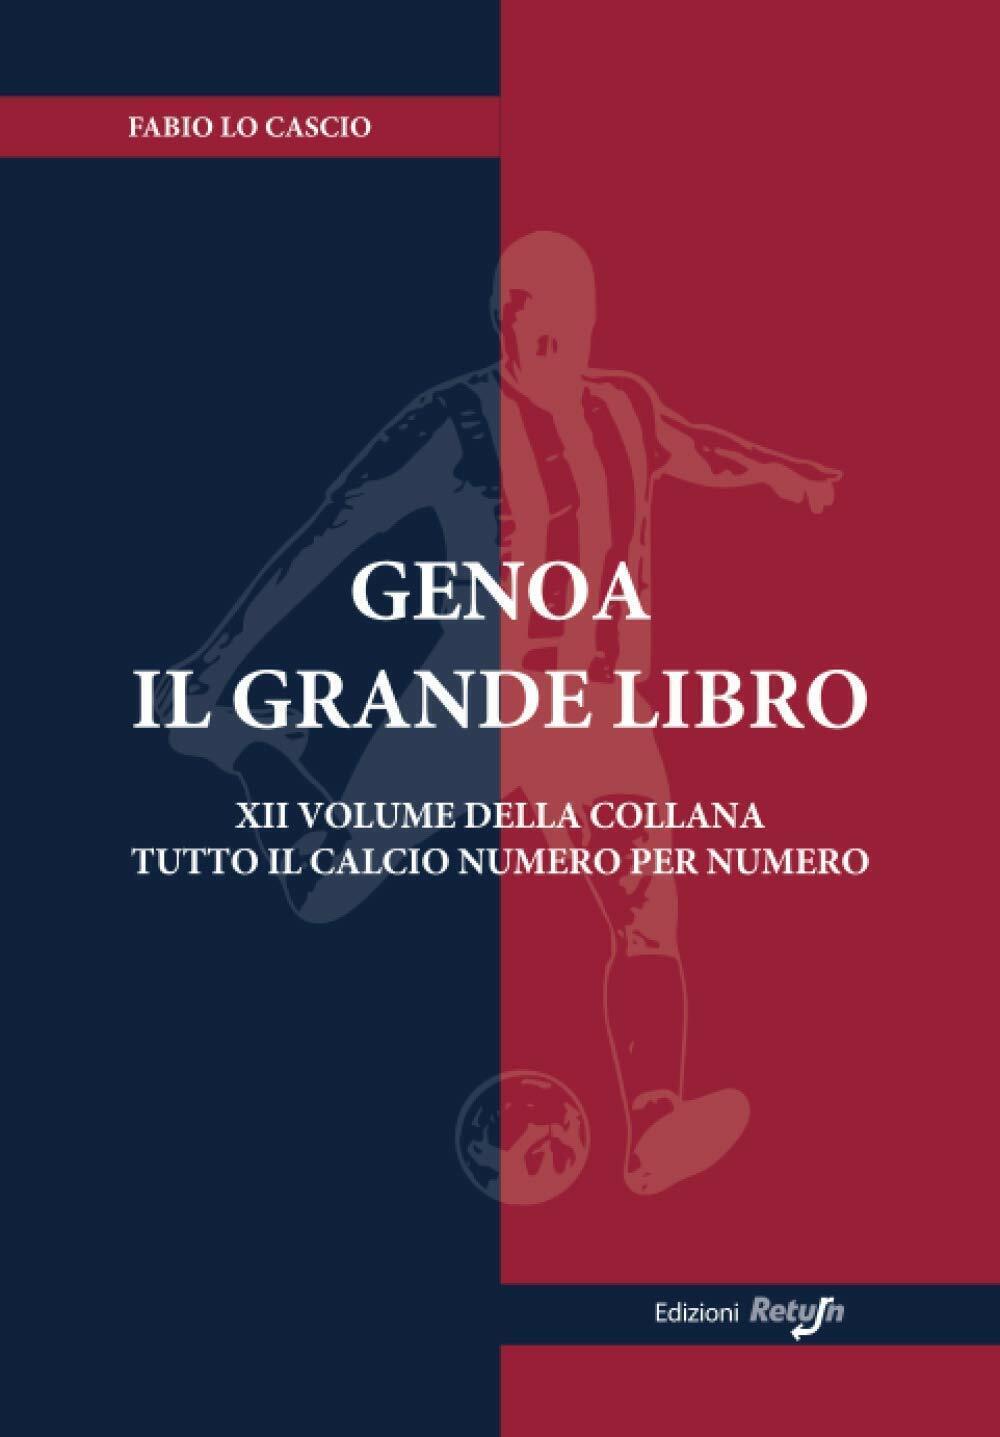 Genoa il Grande Libro - Fabio Lo Cascio - Return, 2019 libro usato